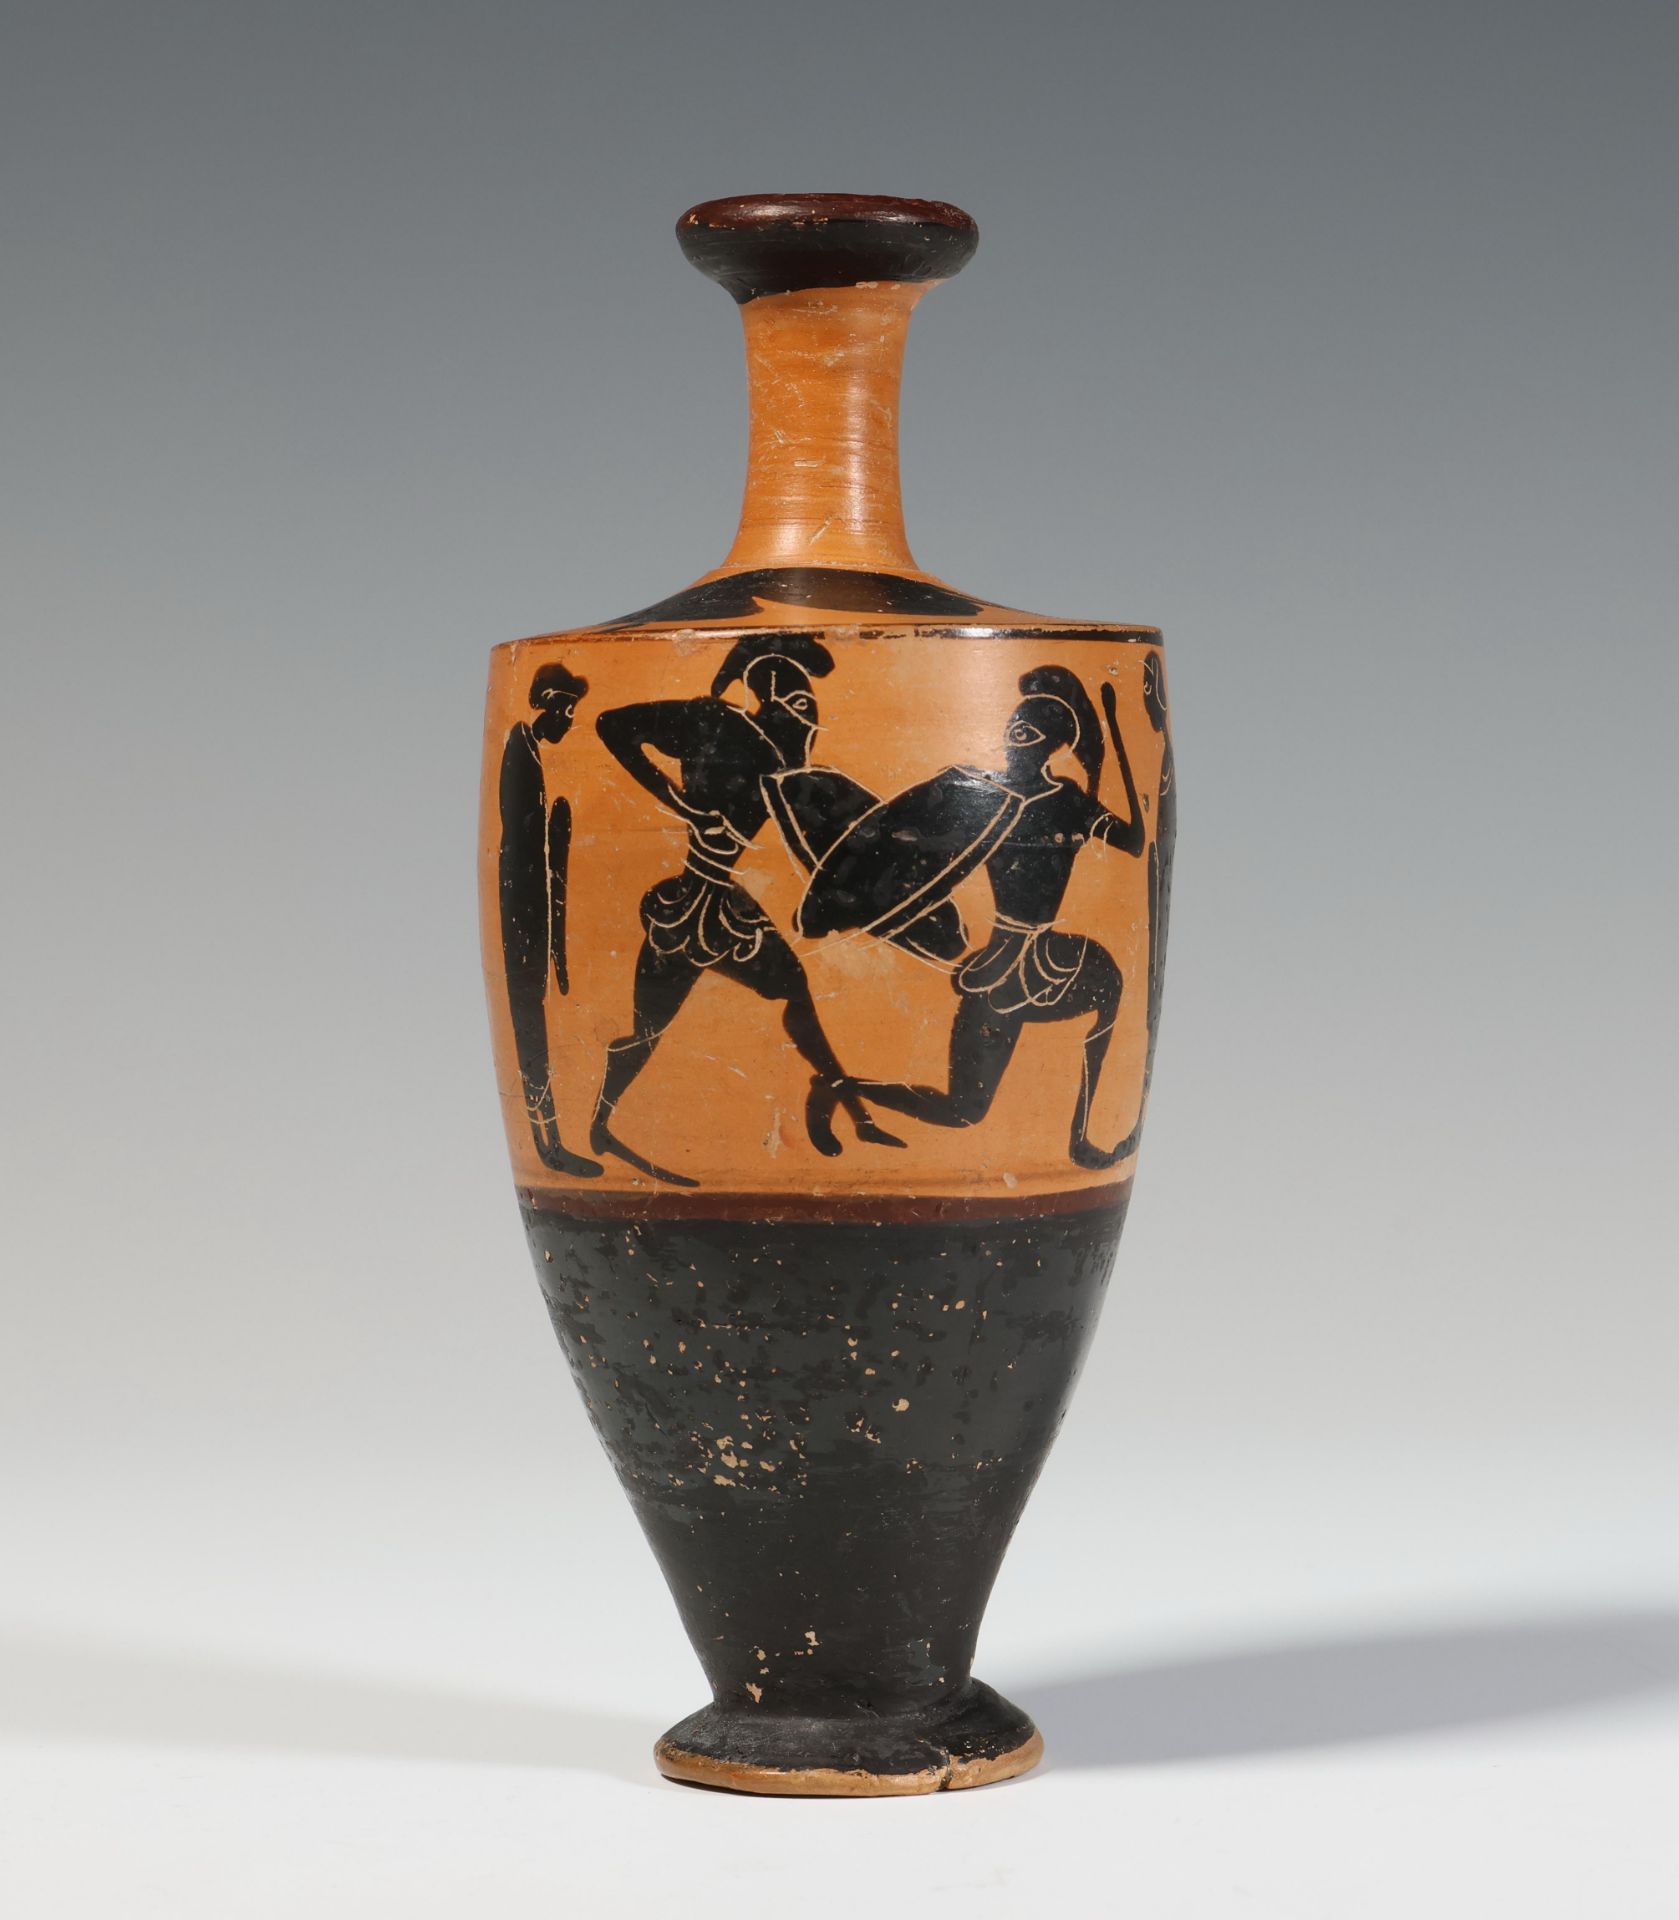 Greek, Attic lekythos, ca. 600 BC,